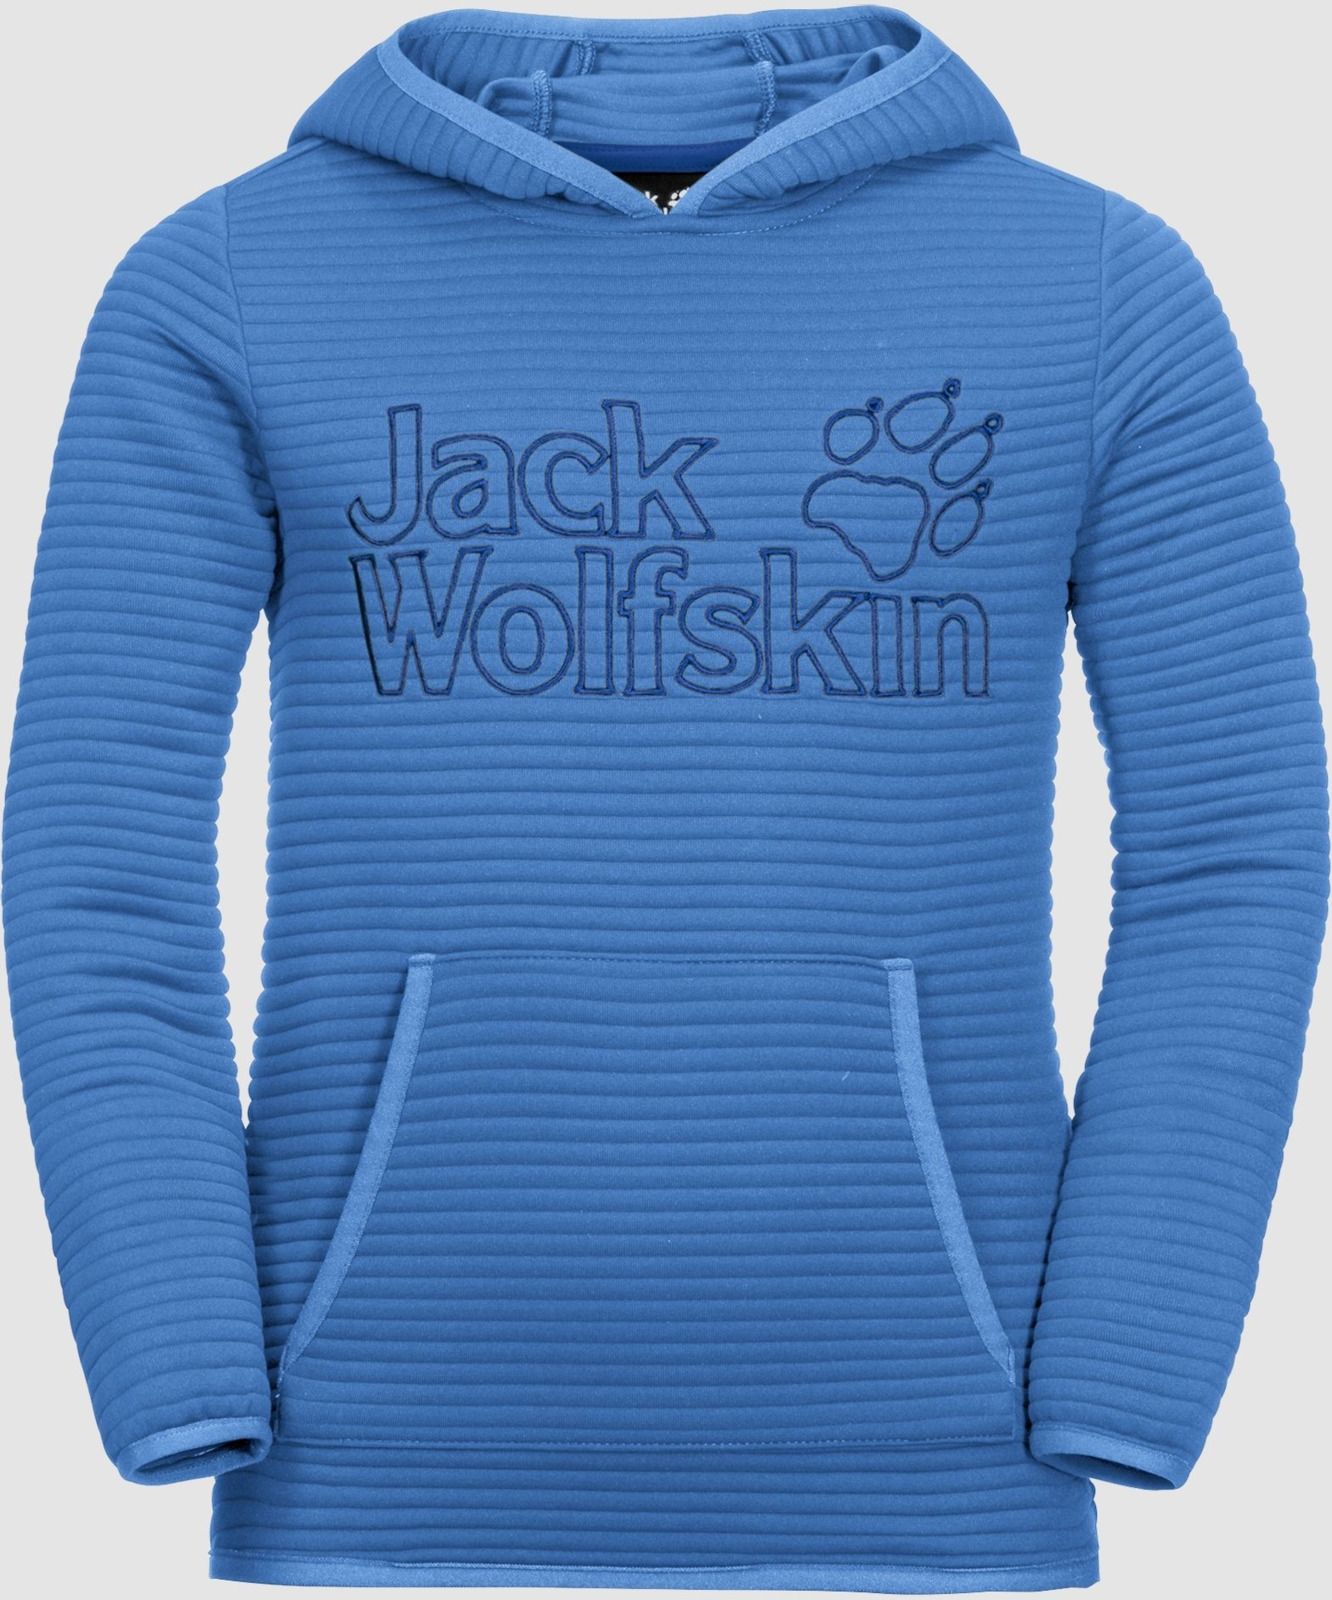   Jack Wolfskin Modesto Hoody, : -. 1607721-1515.  140/146